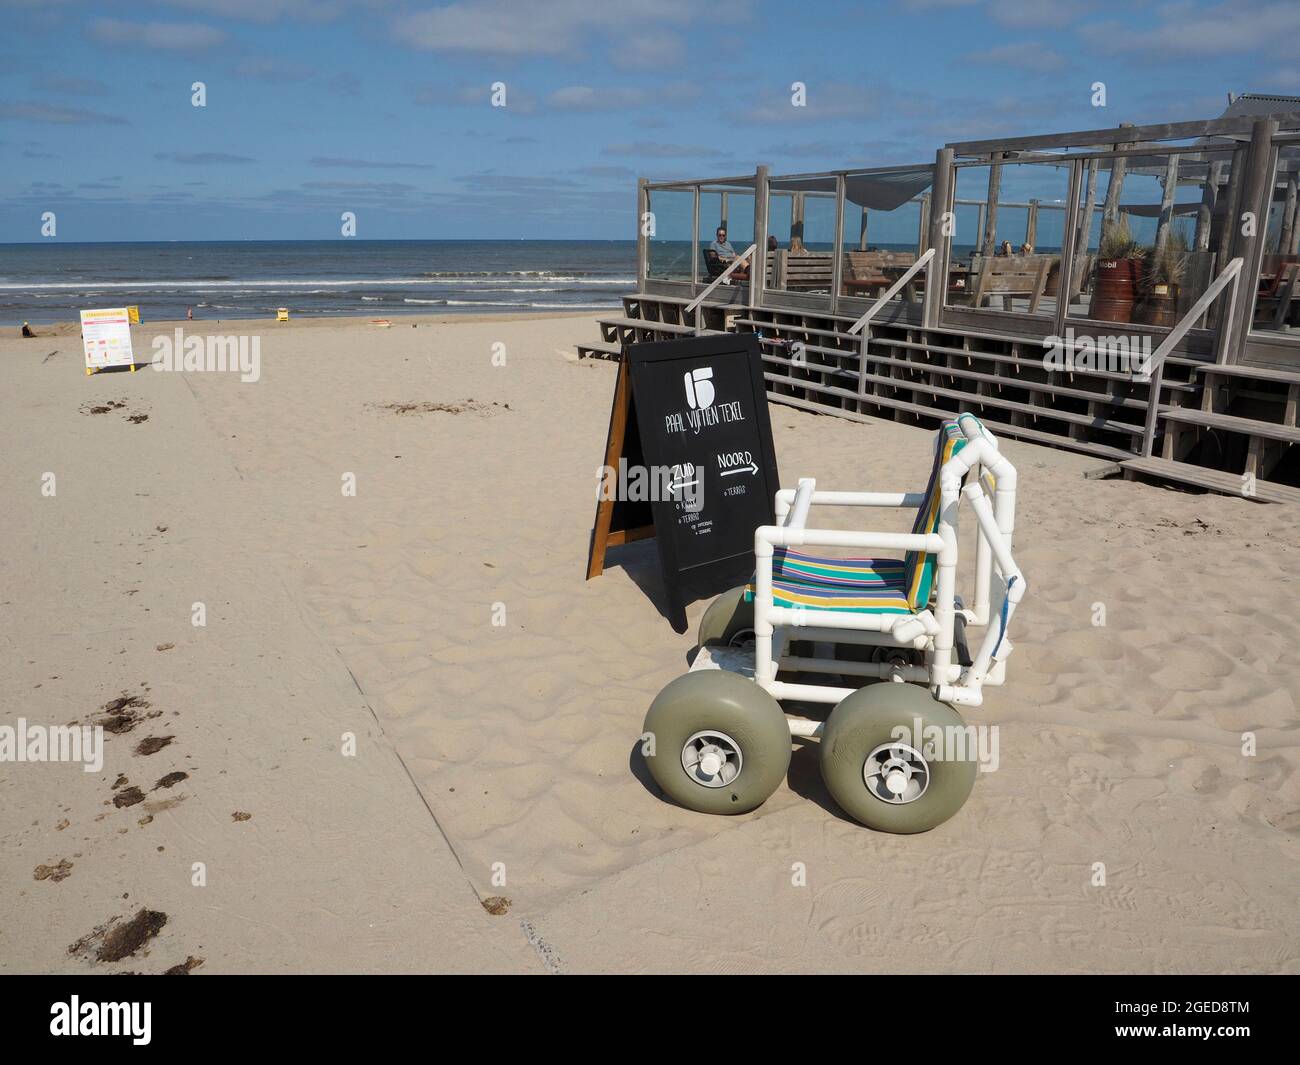 Silla especial de playa para dar a las personas con discapacidad la posibilidad de disfrutar de la playa en Paal 15, en la isla de Texel, Países Bajos Foto de stock